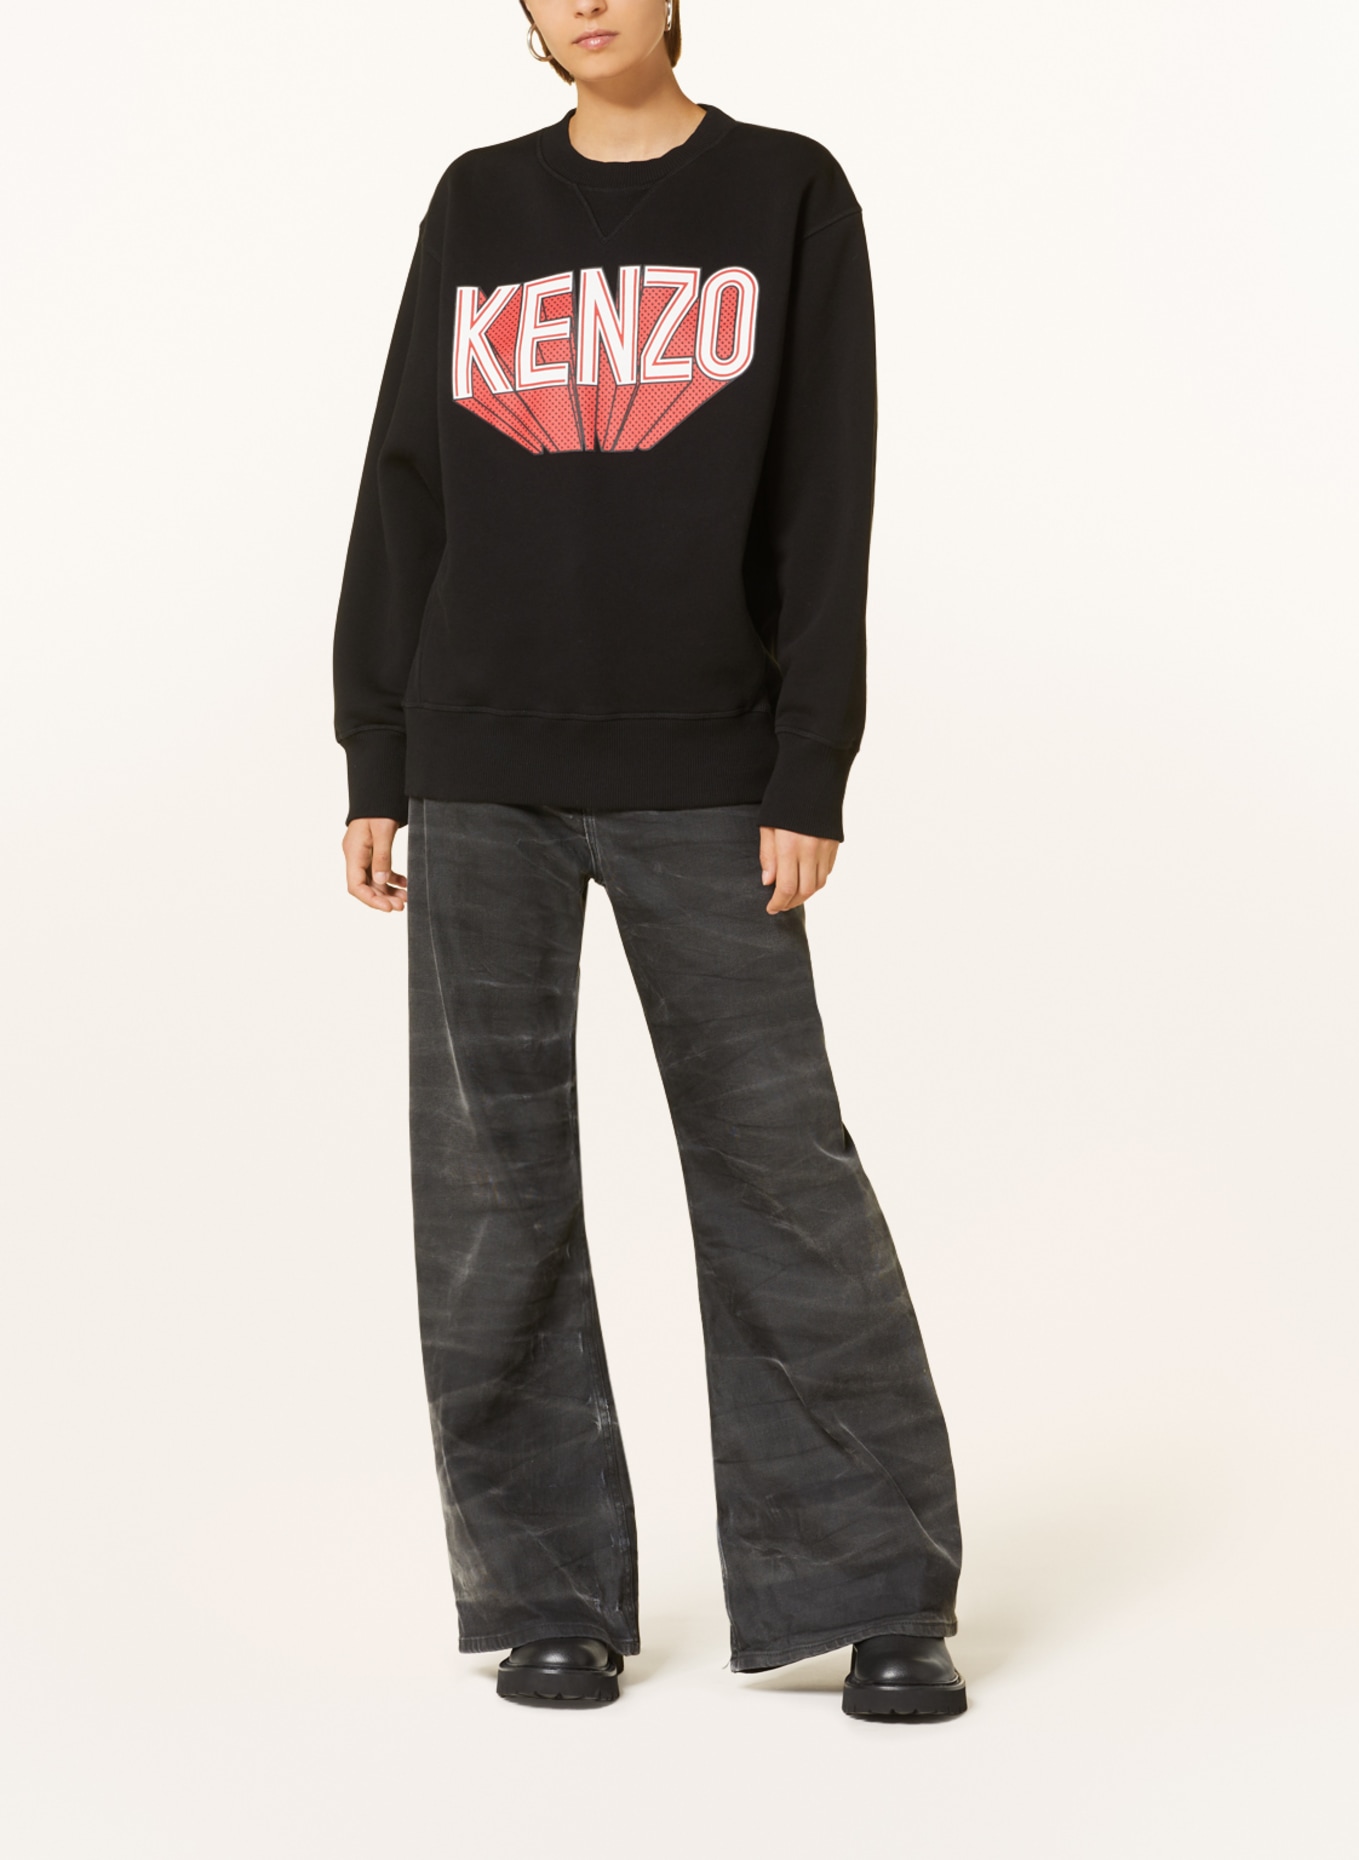 KENZO Sweatshirt, Color: BLACK (Image 2)